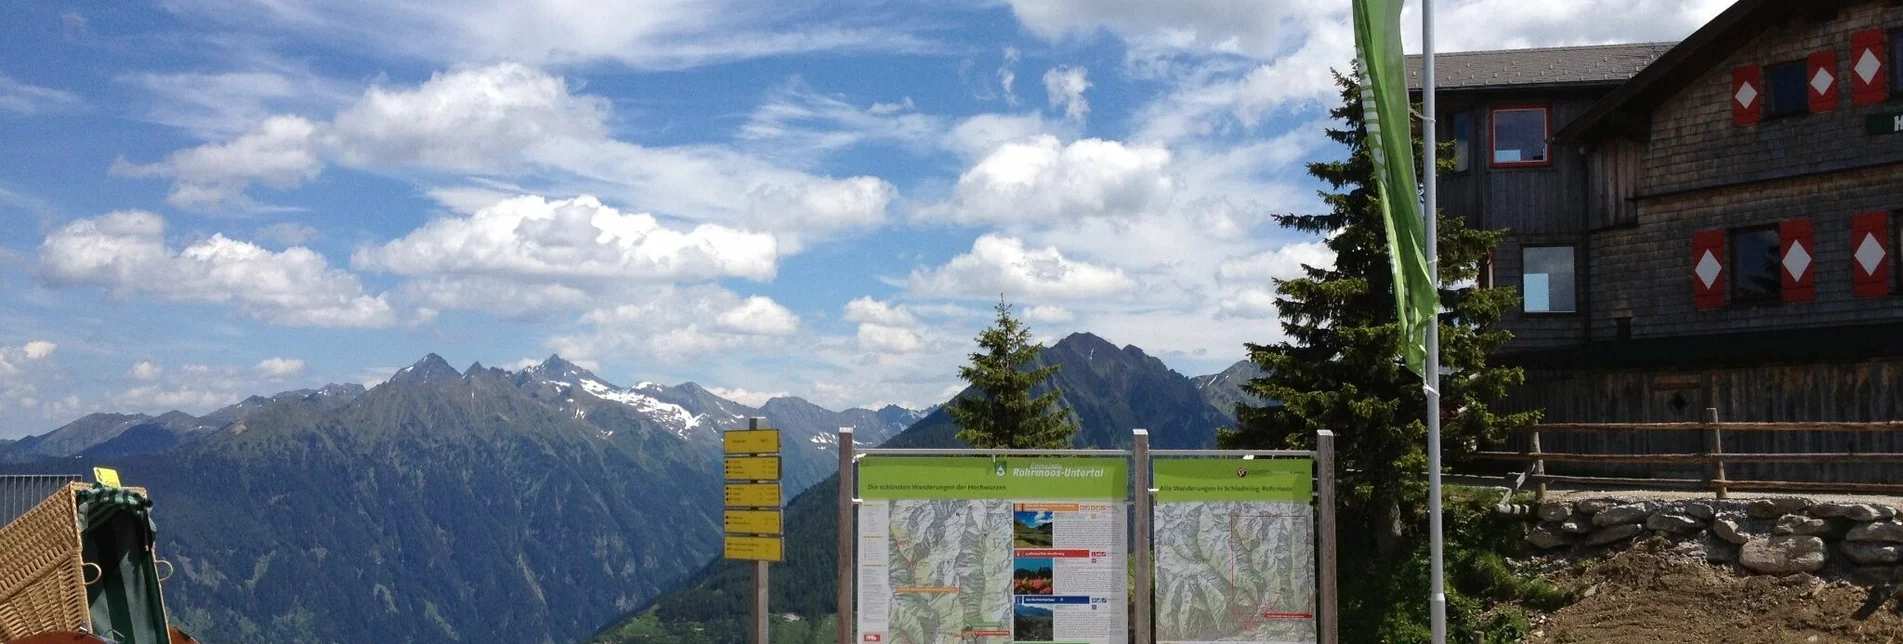 Hiking route Hochwurzen - Rossfeld - Guschen - Touren-Impression #1 | © Tourismusverband Schladming